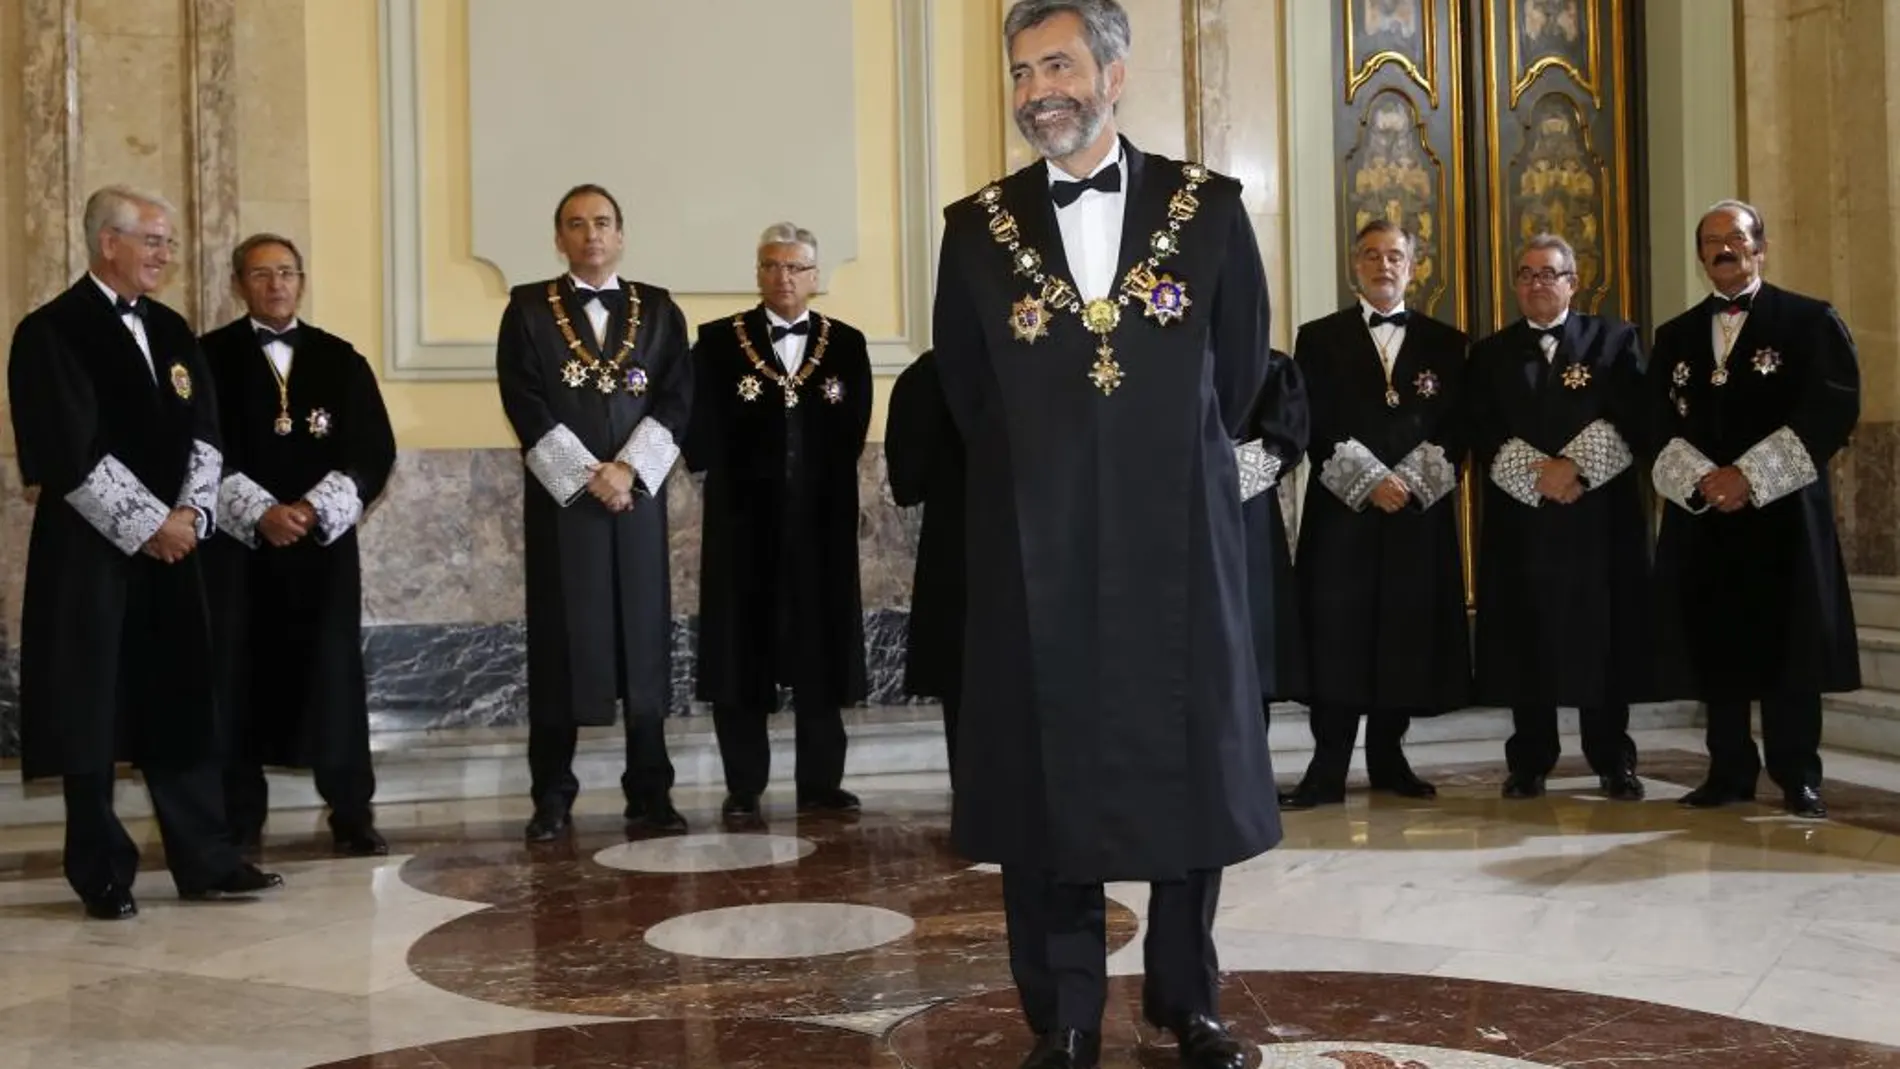 El presidente del Tribunal Supremo y del Consejo General del Poder Judicial, Carlos Lesmes, al inicio de la ceremonia de apertura del Año Judicial.